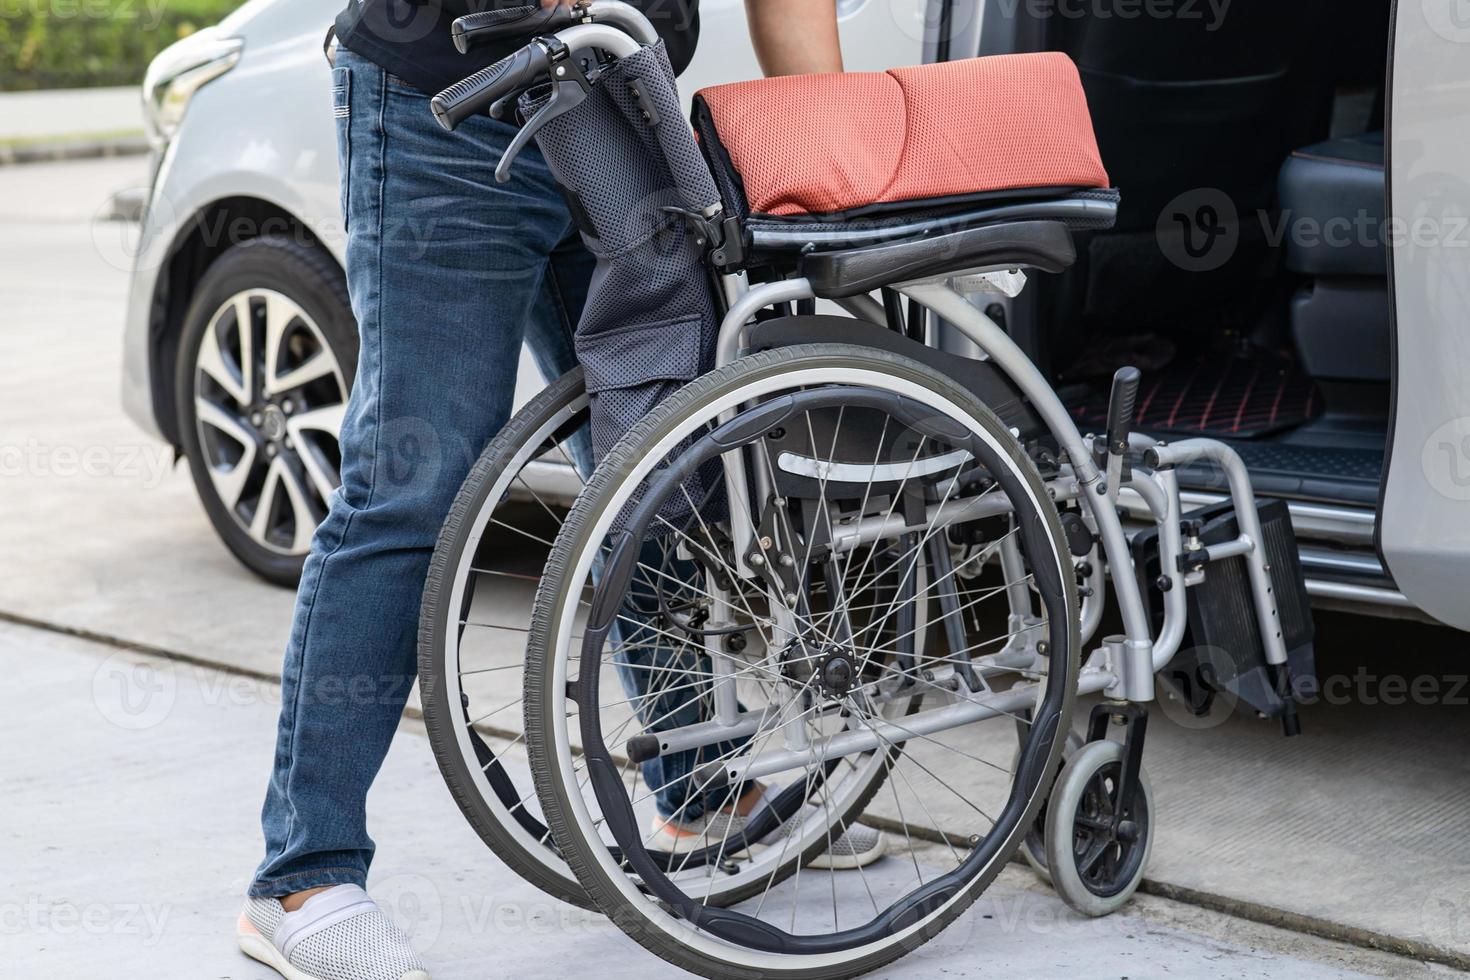 femme asiatique pliant et soulevant le fauteuil roulant dans sa voiture. notion d'accessibilité. photo